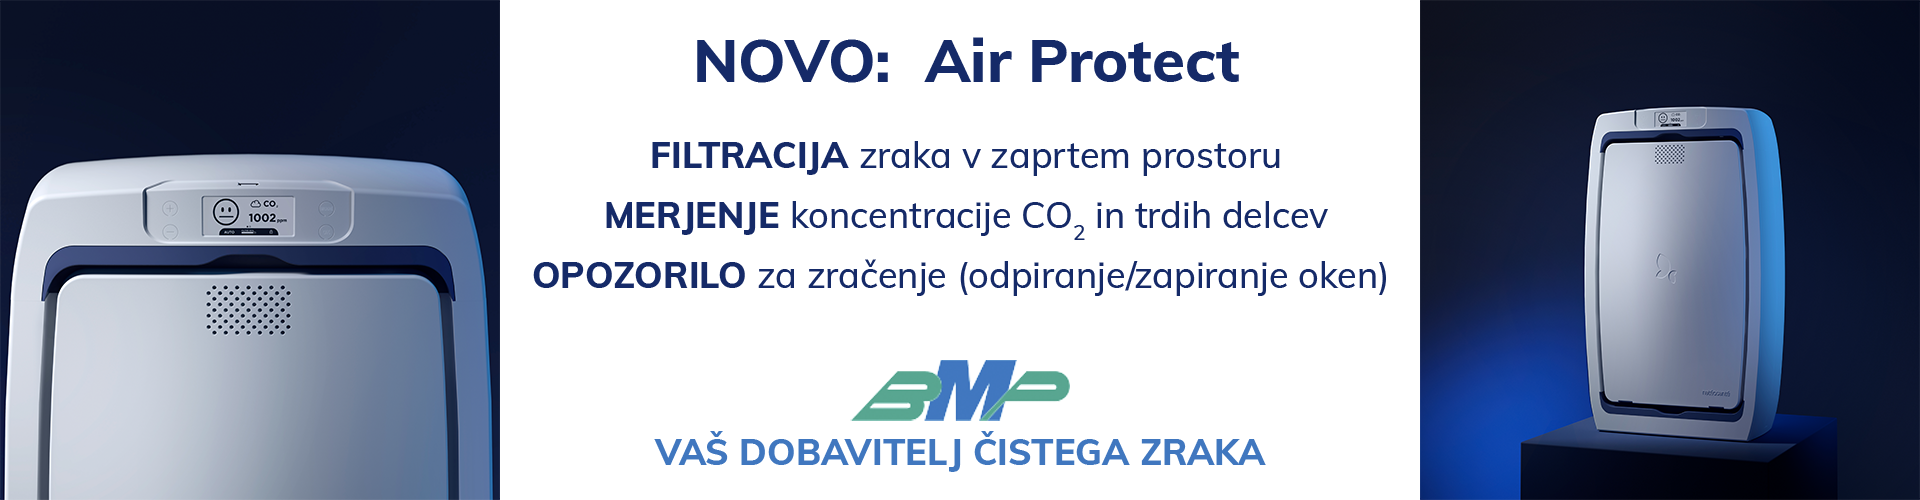 Air Protect naprava za čiščenje zraka in merjenje CO2